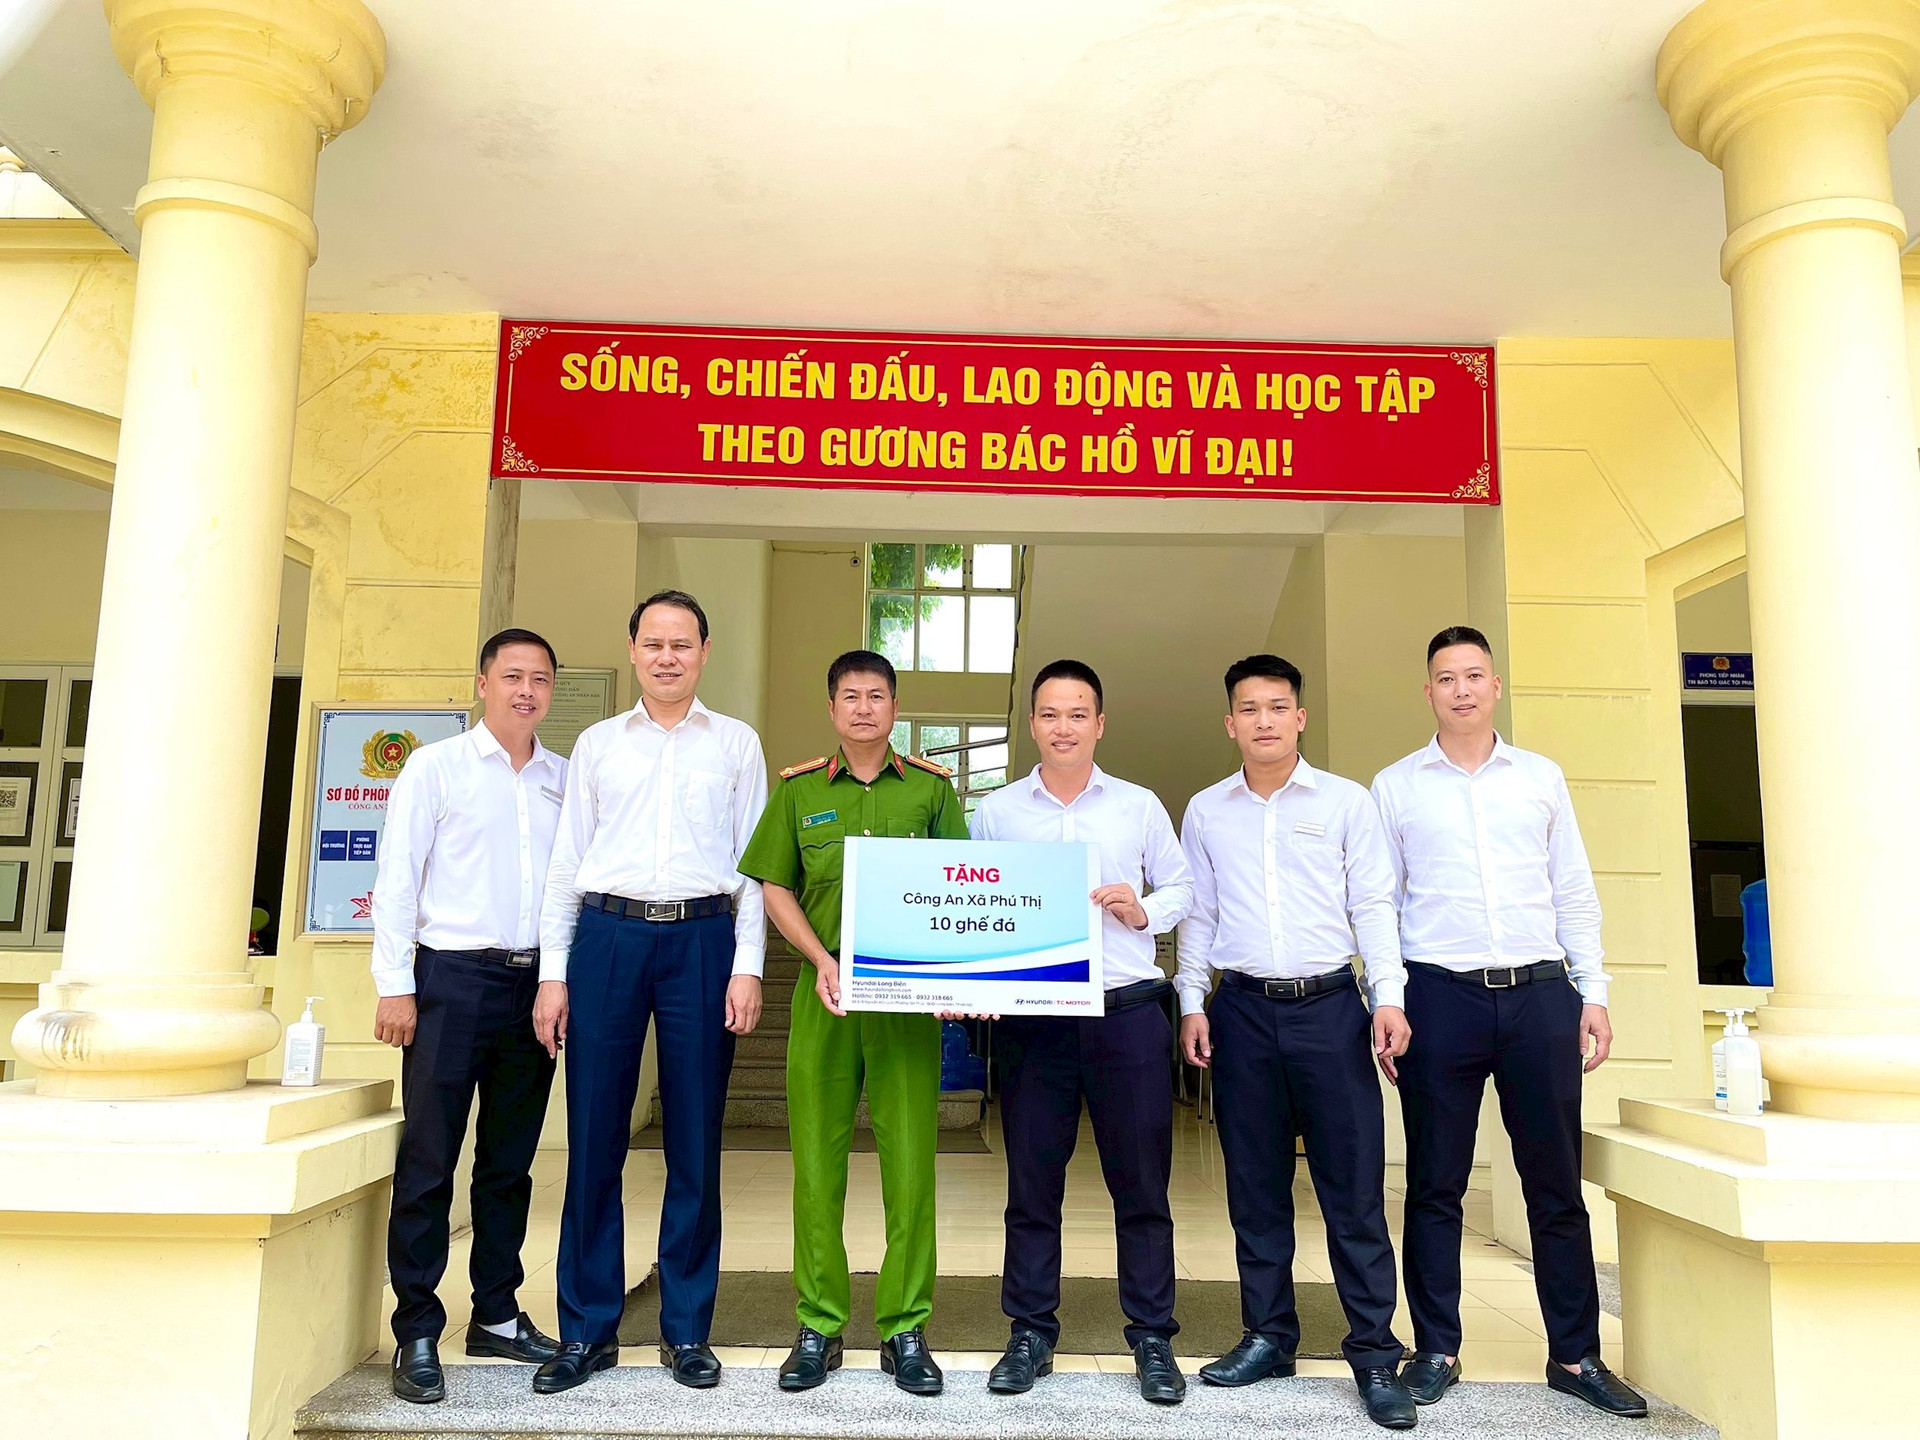  Hyundai Long Biên trao tặng ghế đá cho Công an xã Phú Thị